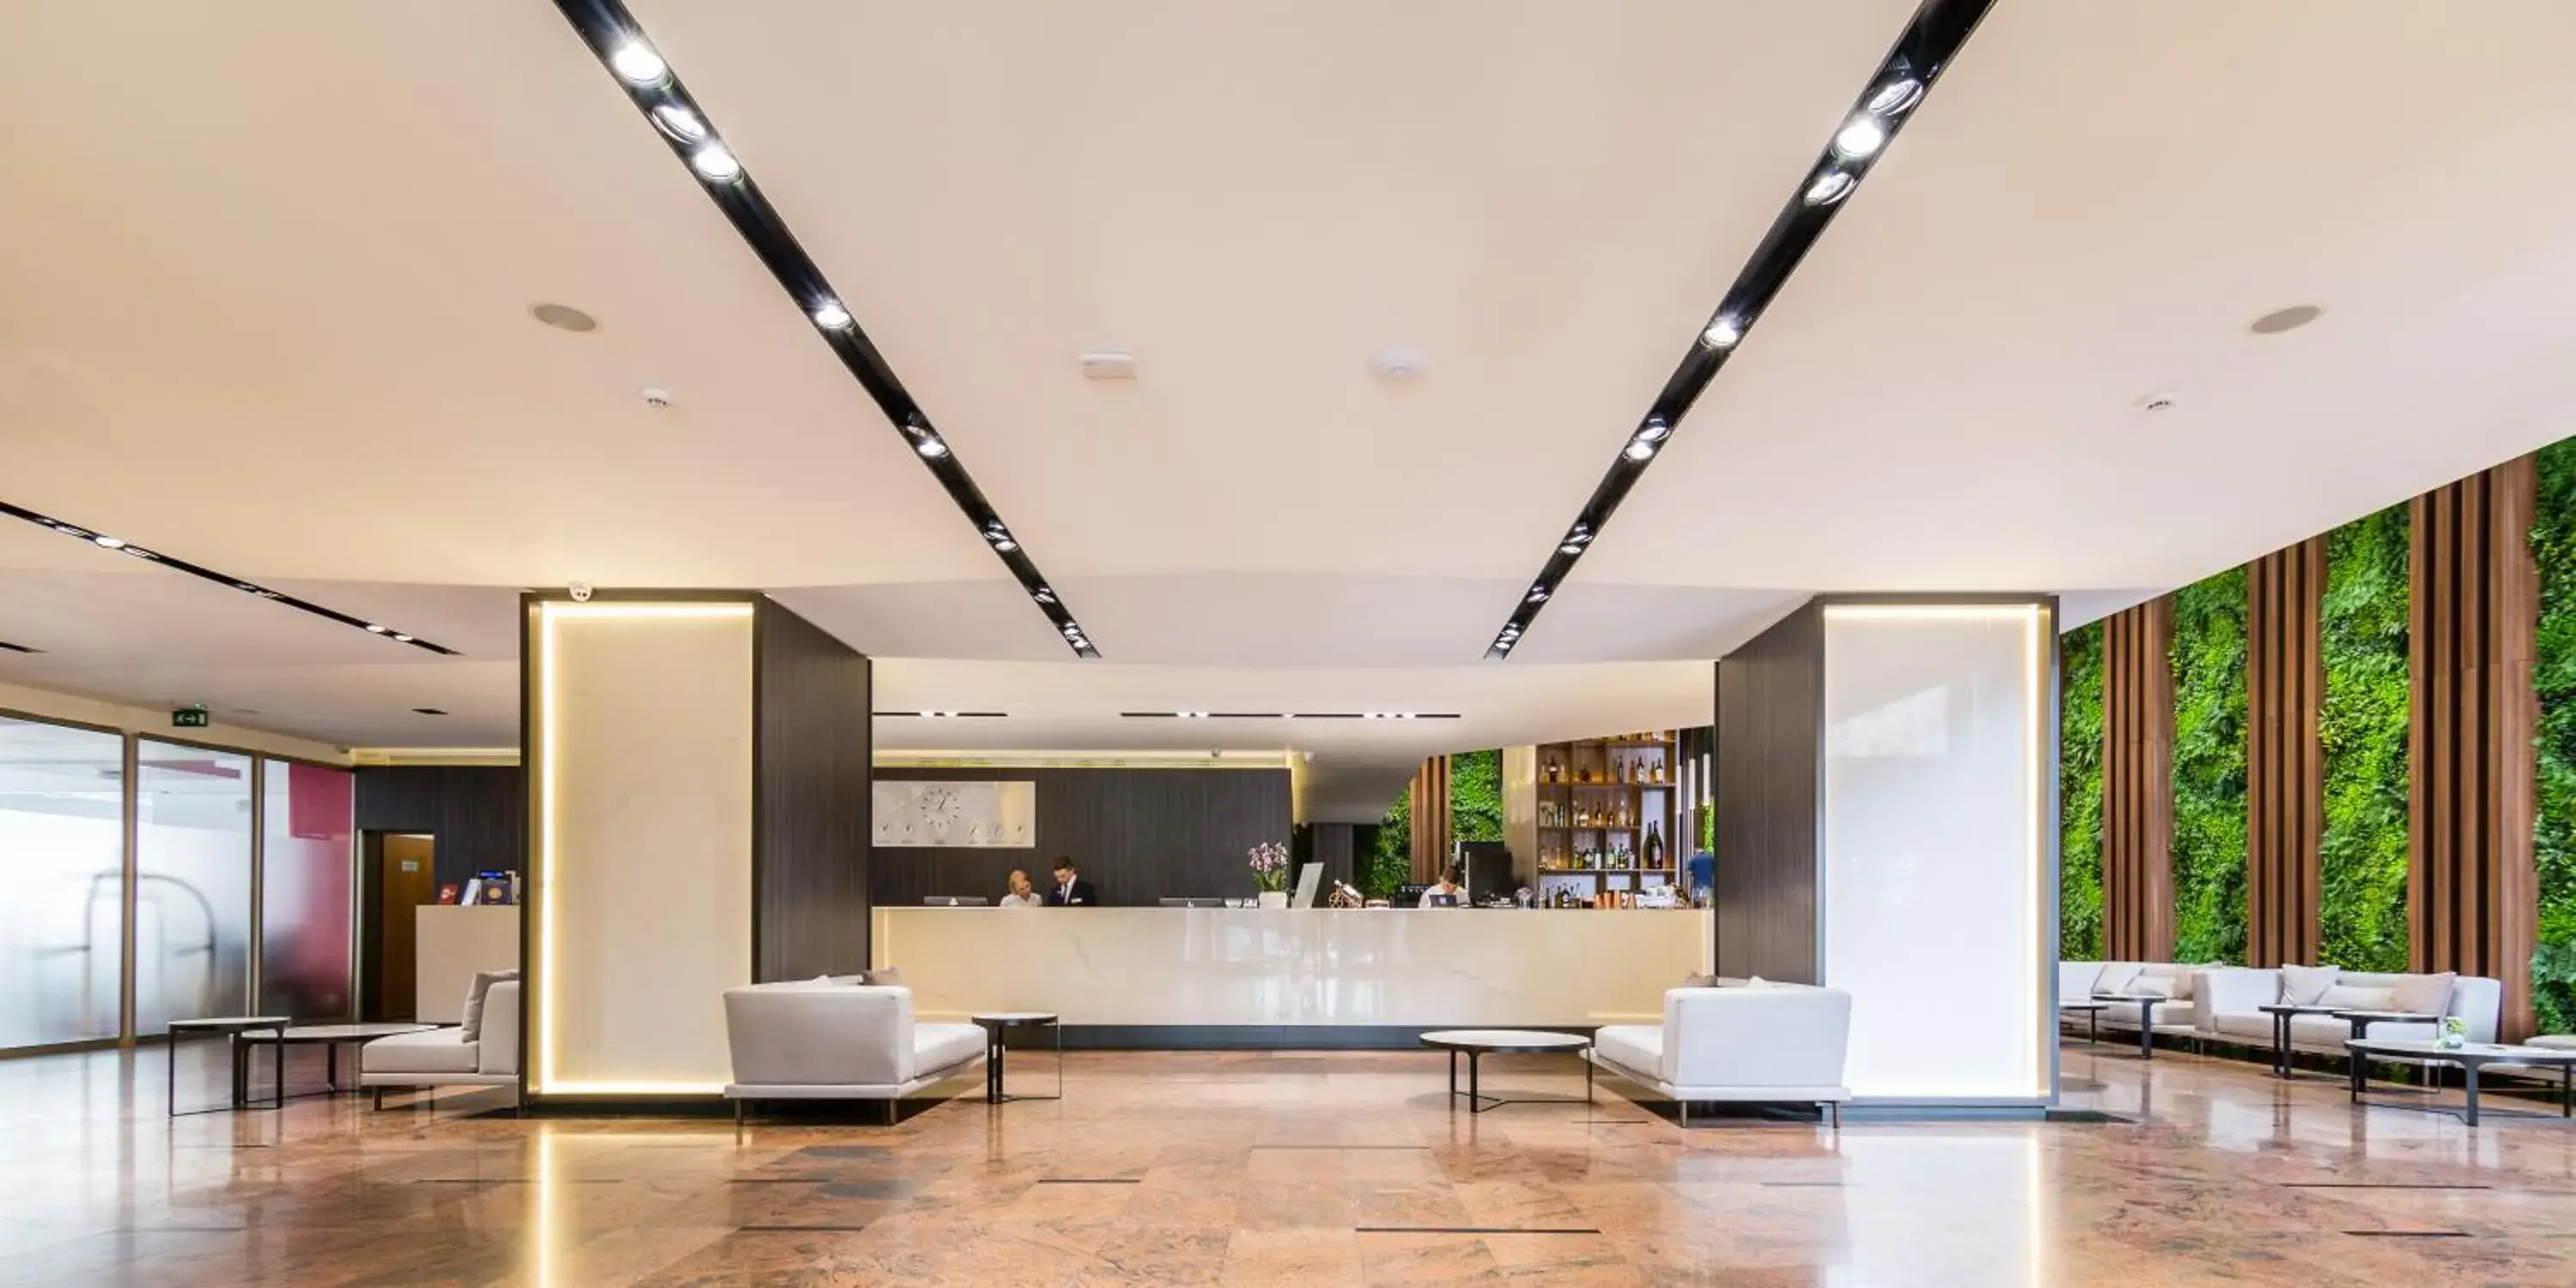 Lobby or reception, Lobby/Reception in Unirea Hotel & Spa